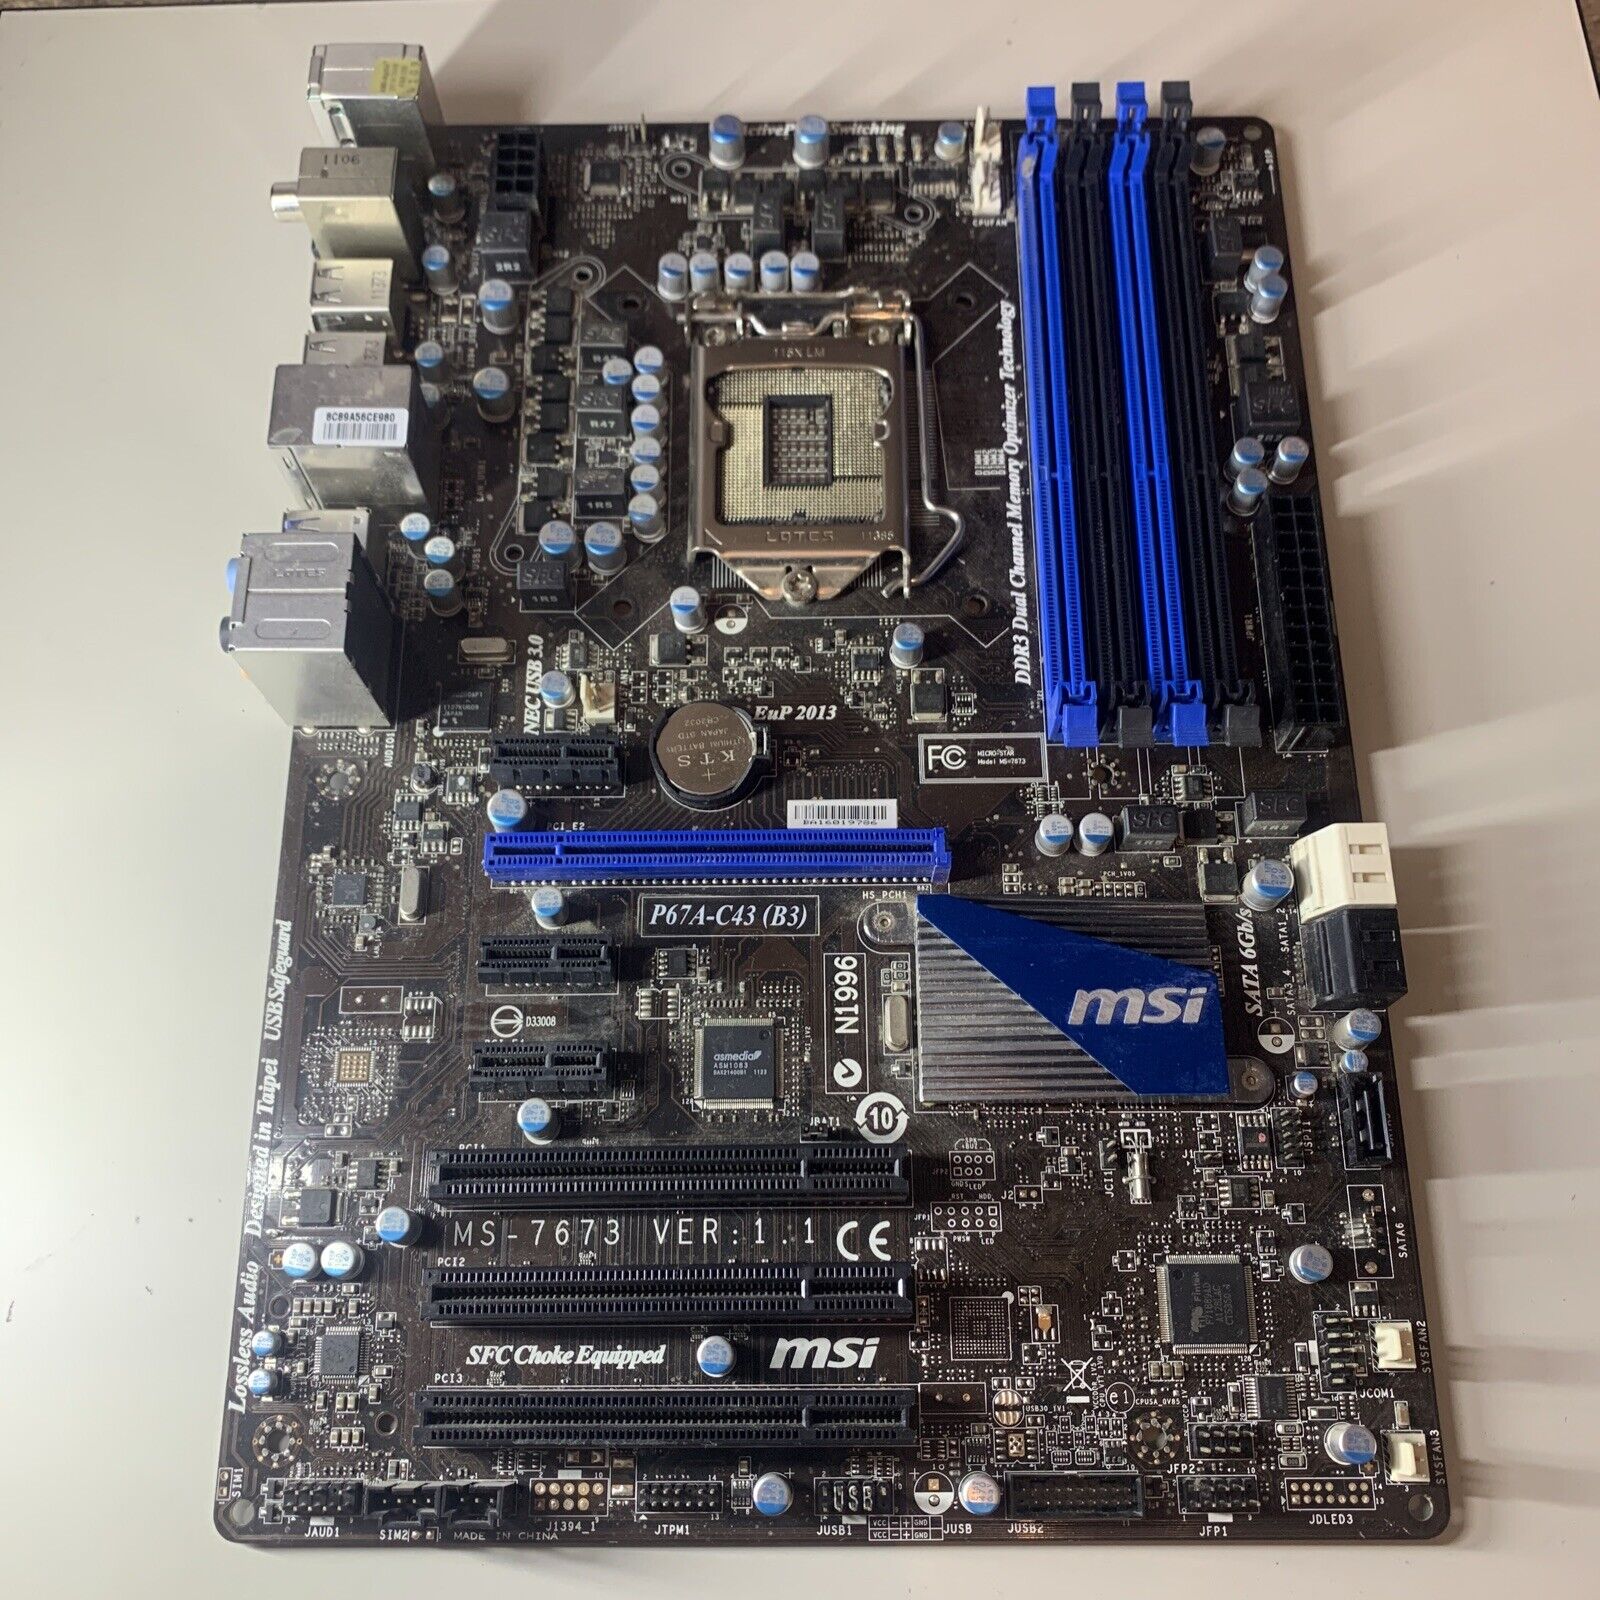 MSI P67A-C43 (B3) LGA 1155/Socket H2, Intel Motherboard, ATX - No I/O Shield